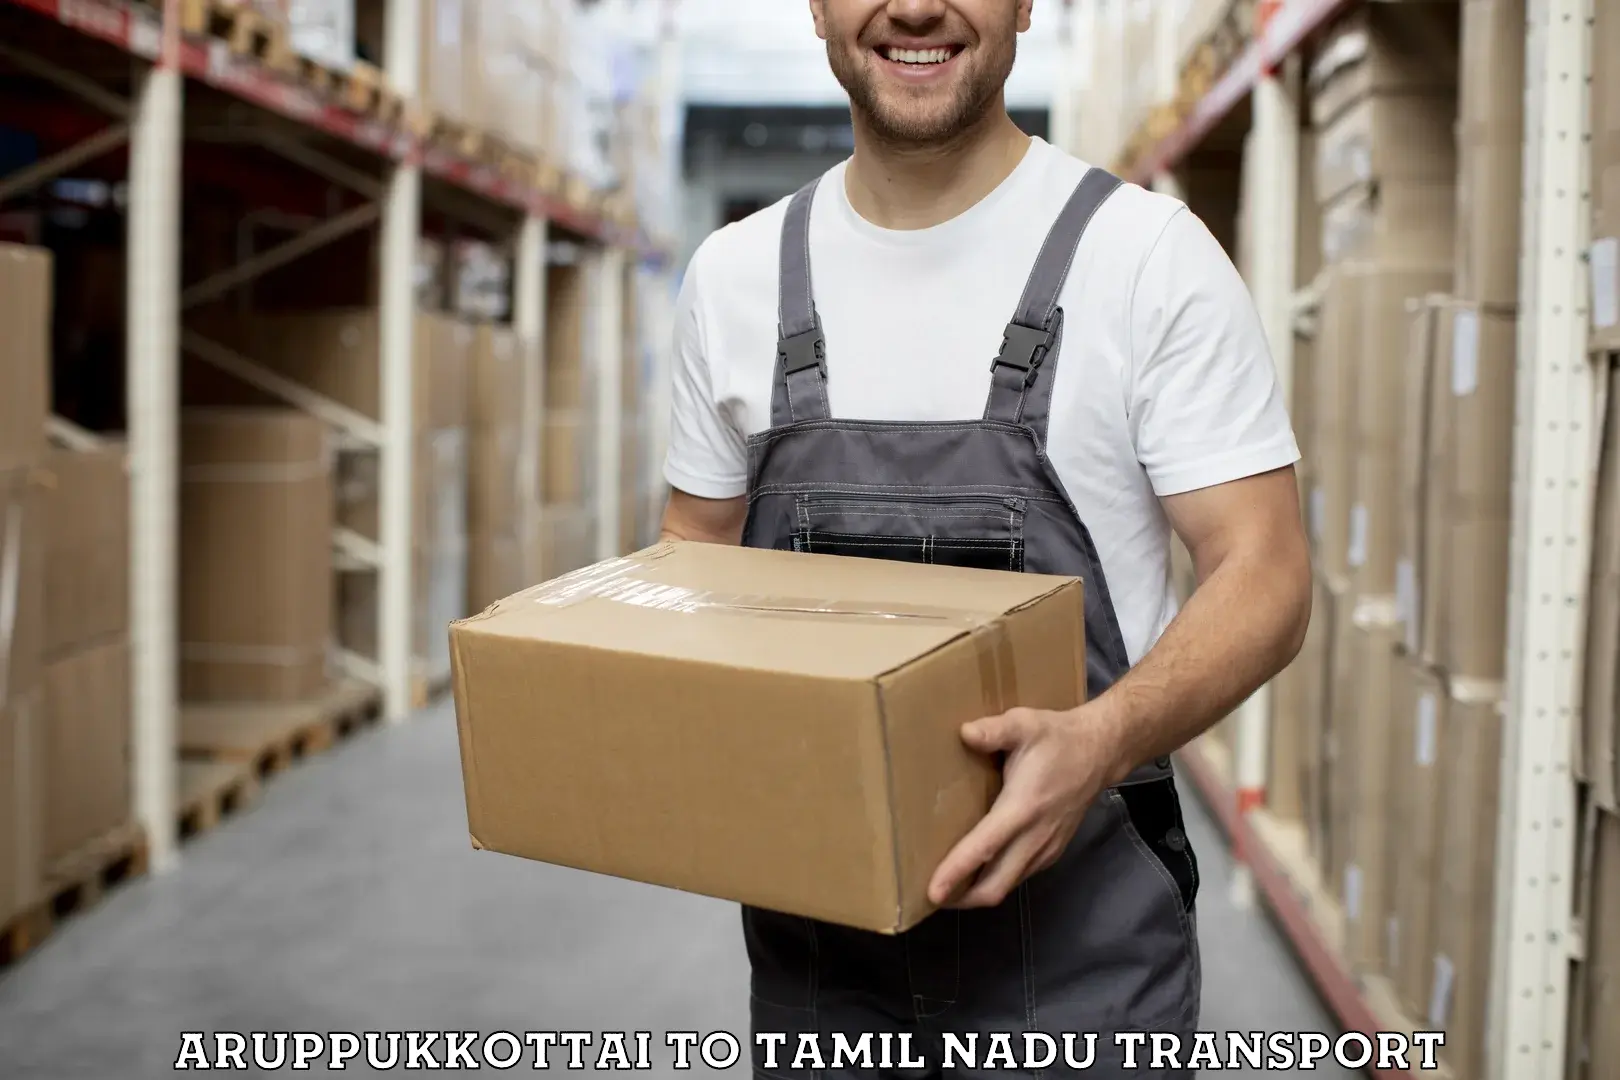 Goods delivery service Aruppukkottai to Ambattur